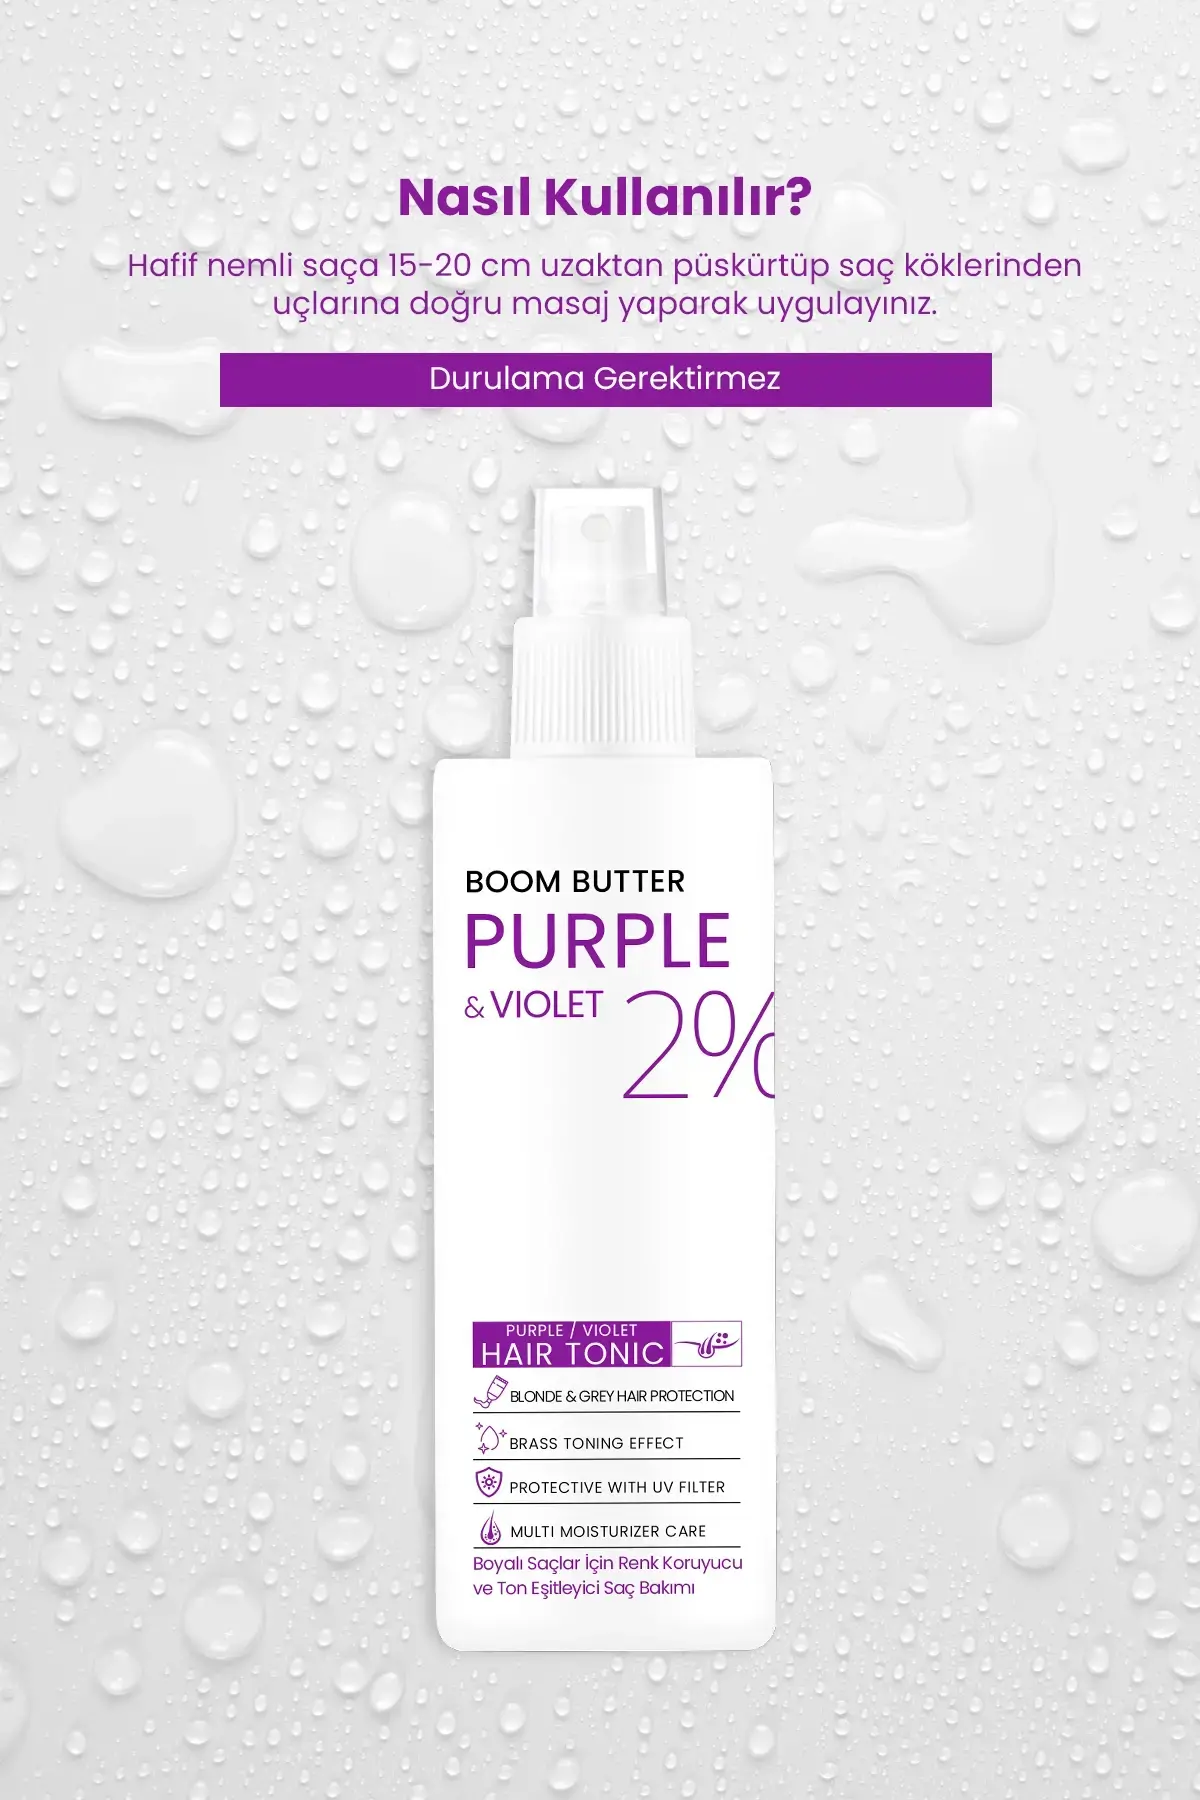 BOOM BUTTER Renk ve Saç Yapısını Koruyucu Purple Mor Saç Toniği 150ML - 6